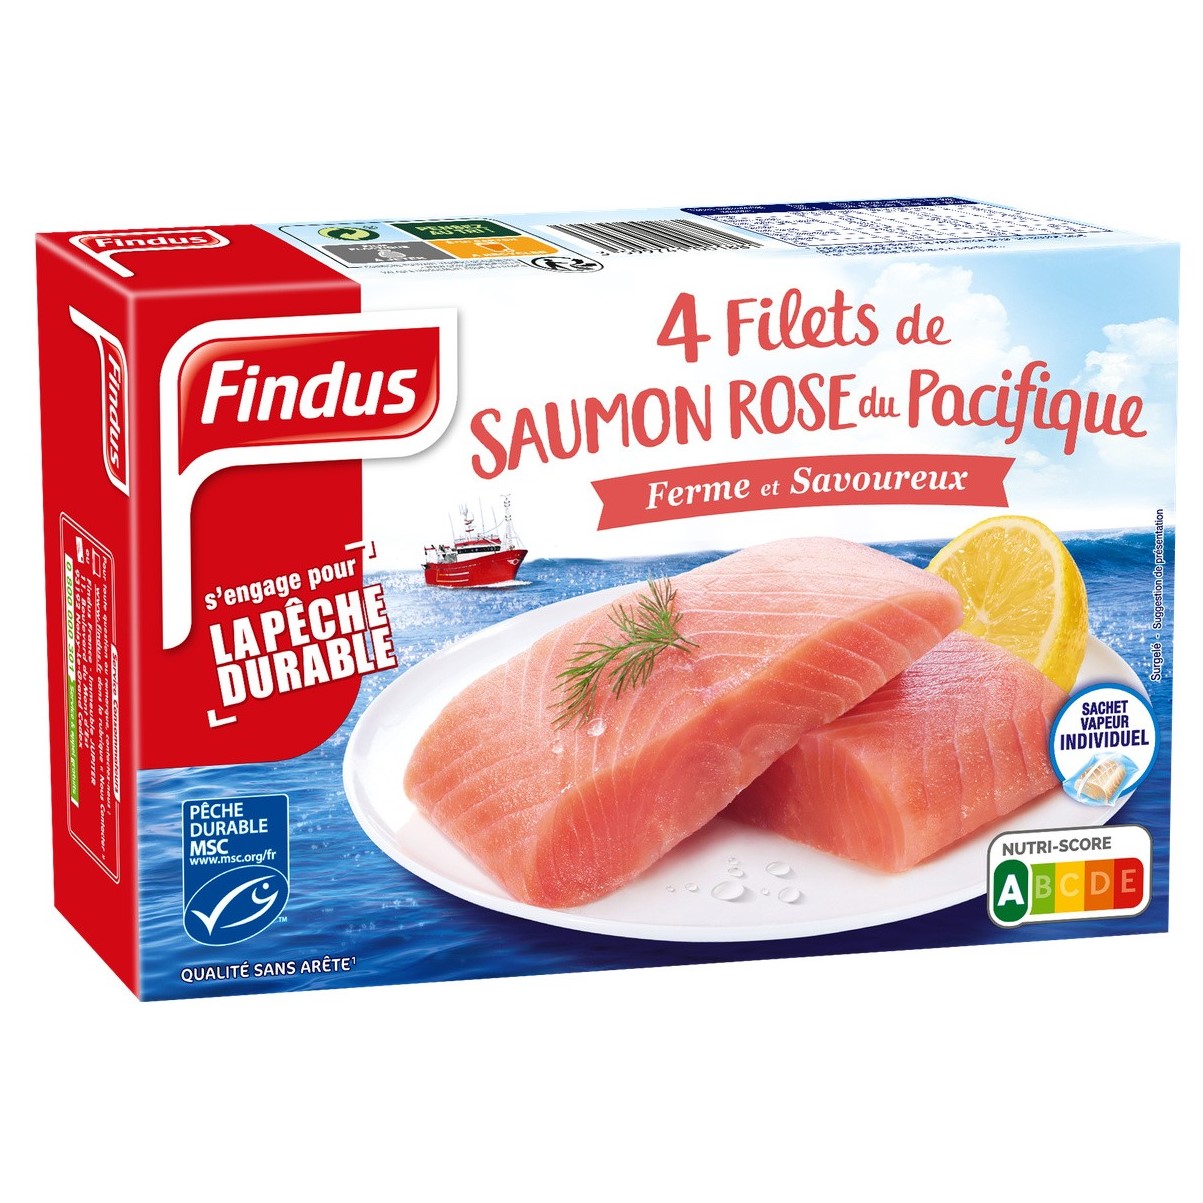 4 Filets sans peau Saumon Rose Sauvage du Pacifique